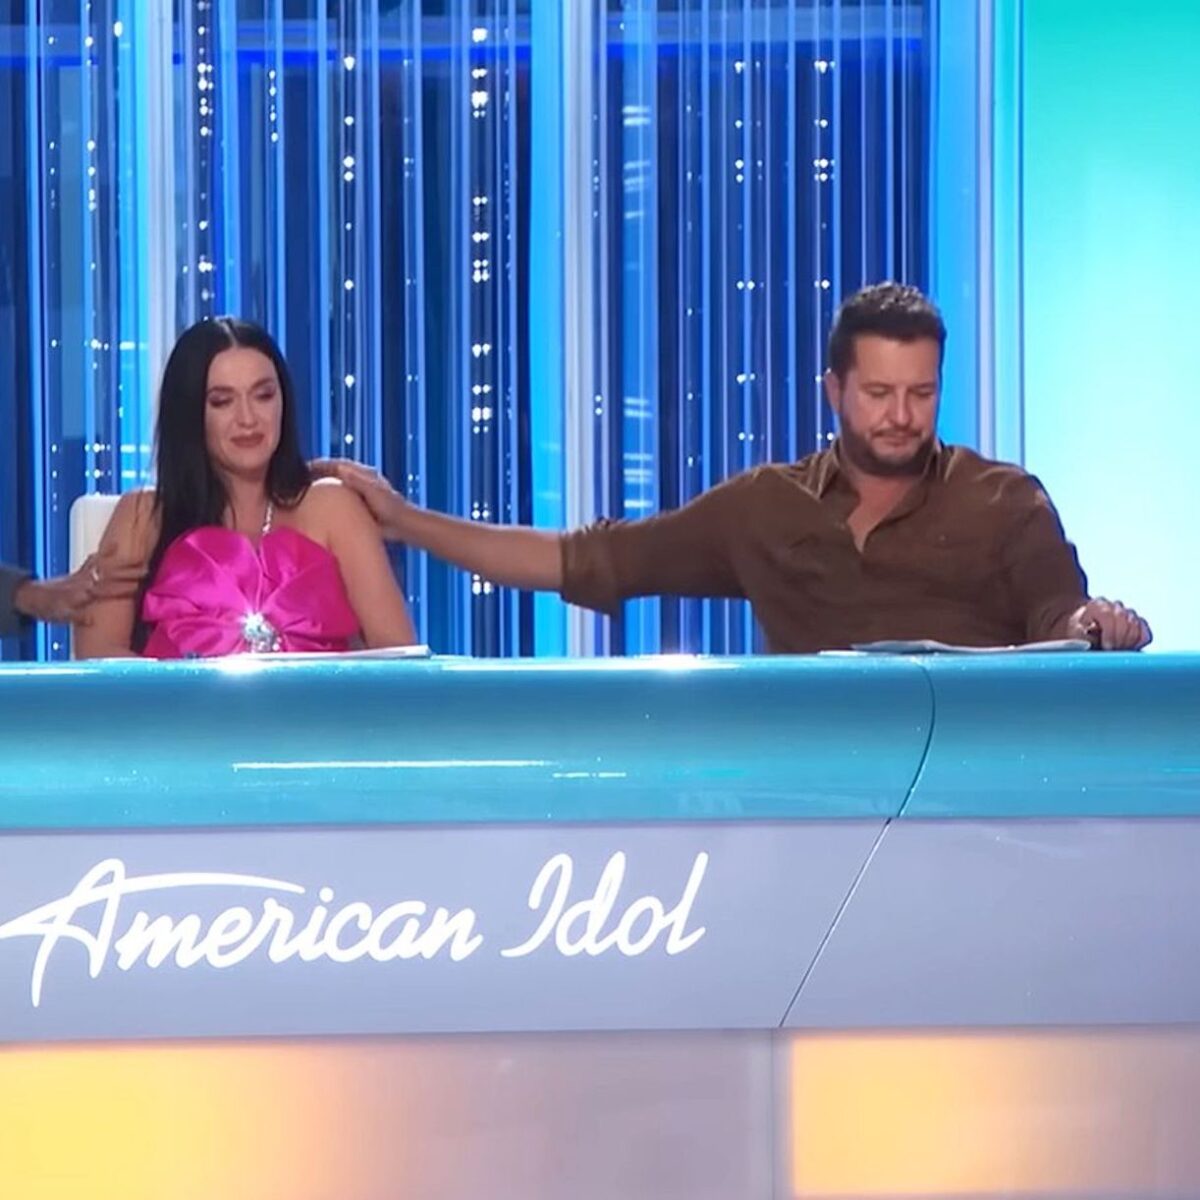 La furia di Katy Perry durante l'ultima puntata di American Idol